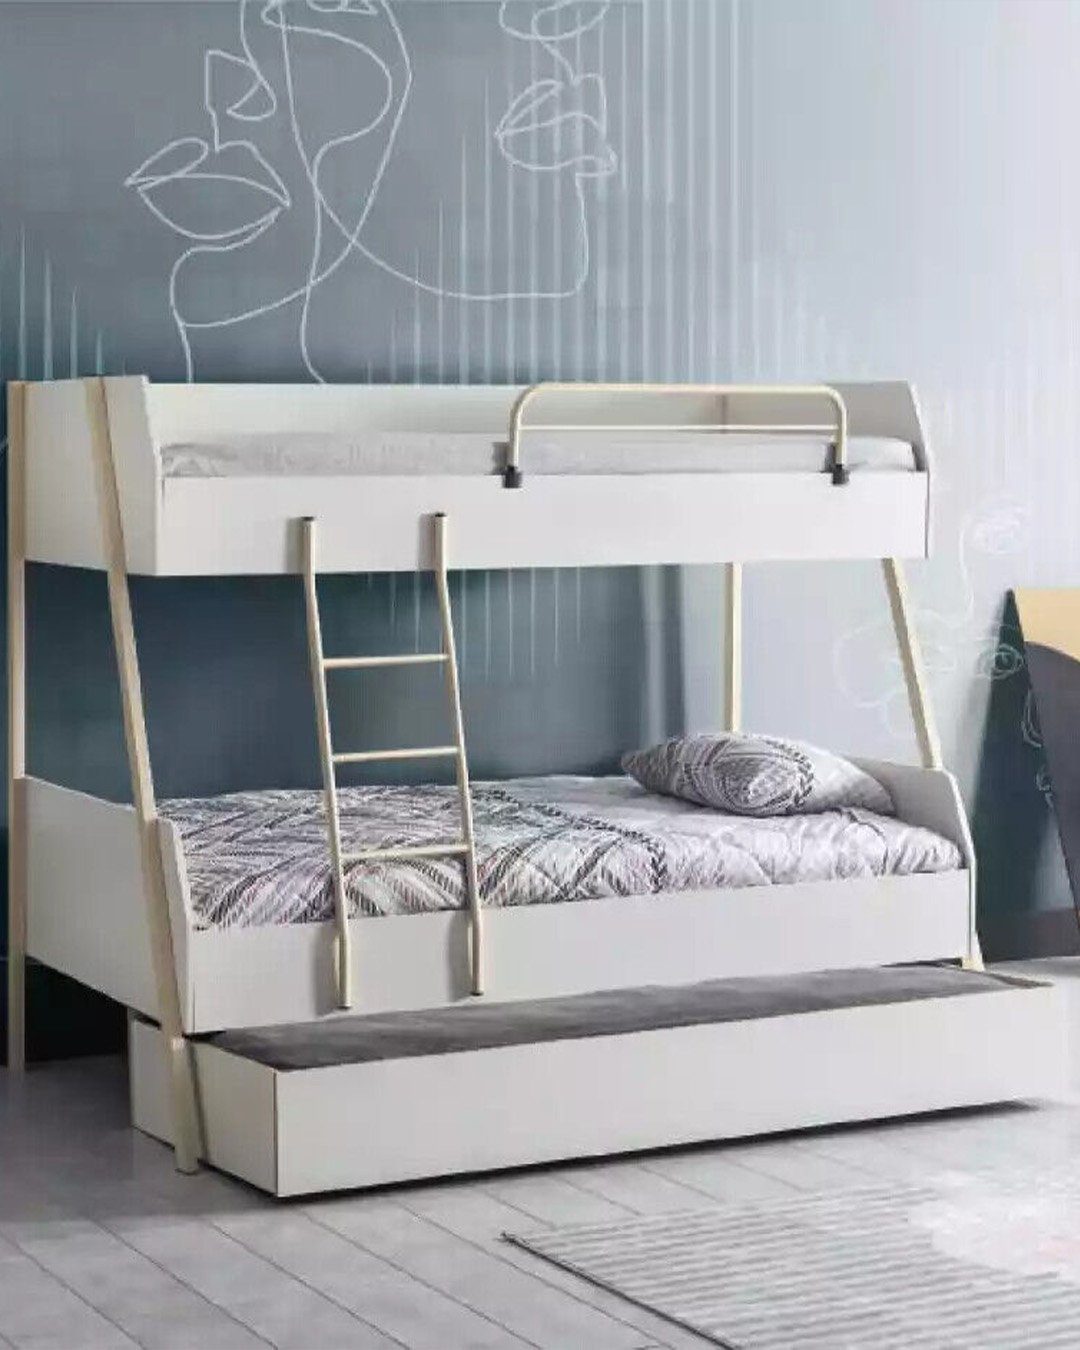 Beliebte Nr. 1 JVmoebel Etagenbett, Jugendbett Weiß Kinderbett Bett Kinderzimmer Design Modernes